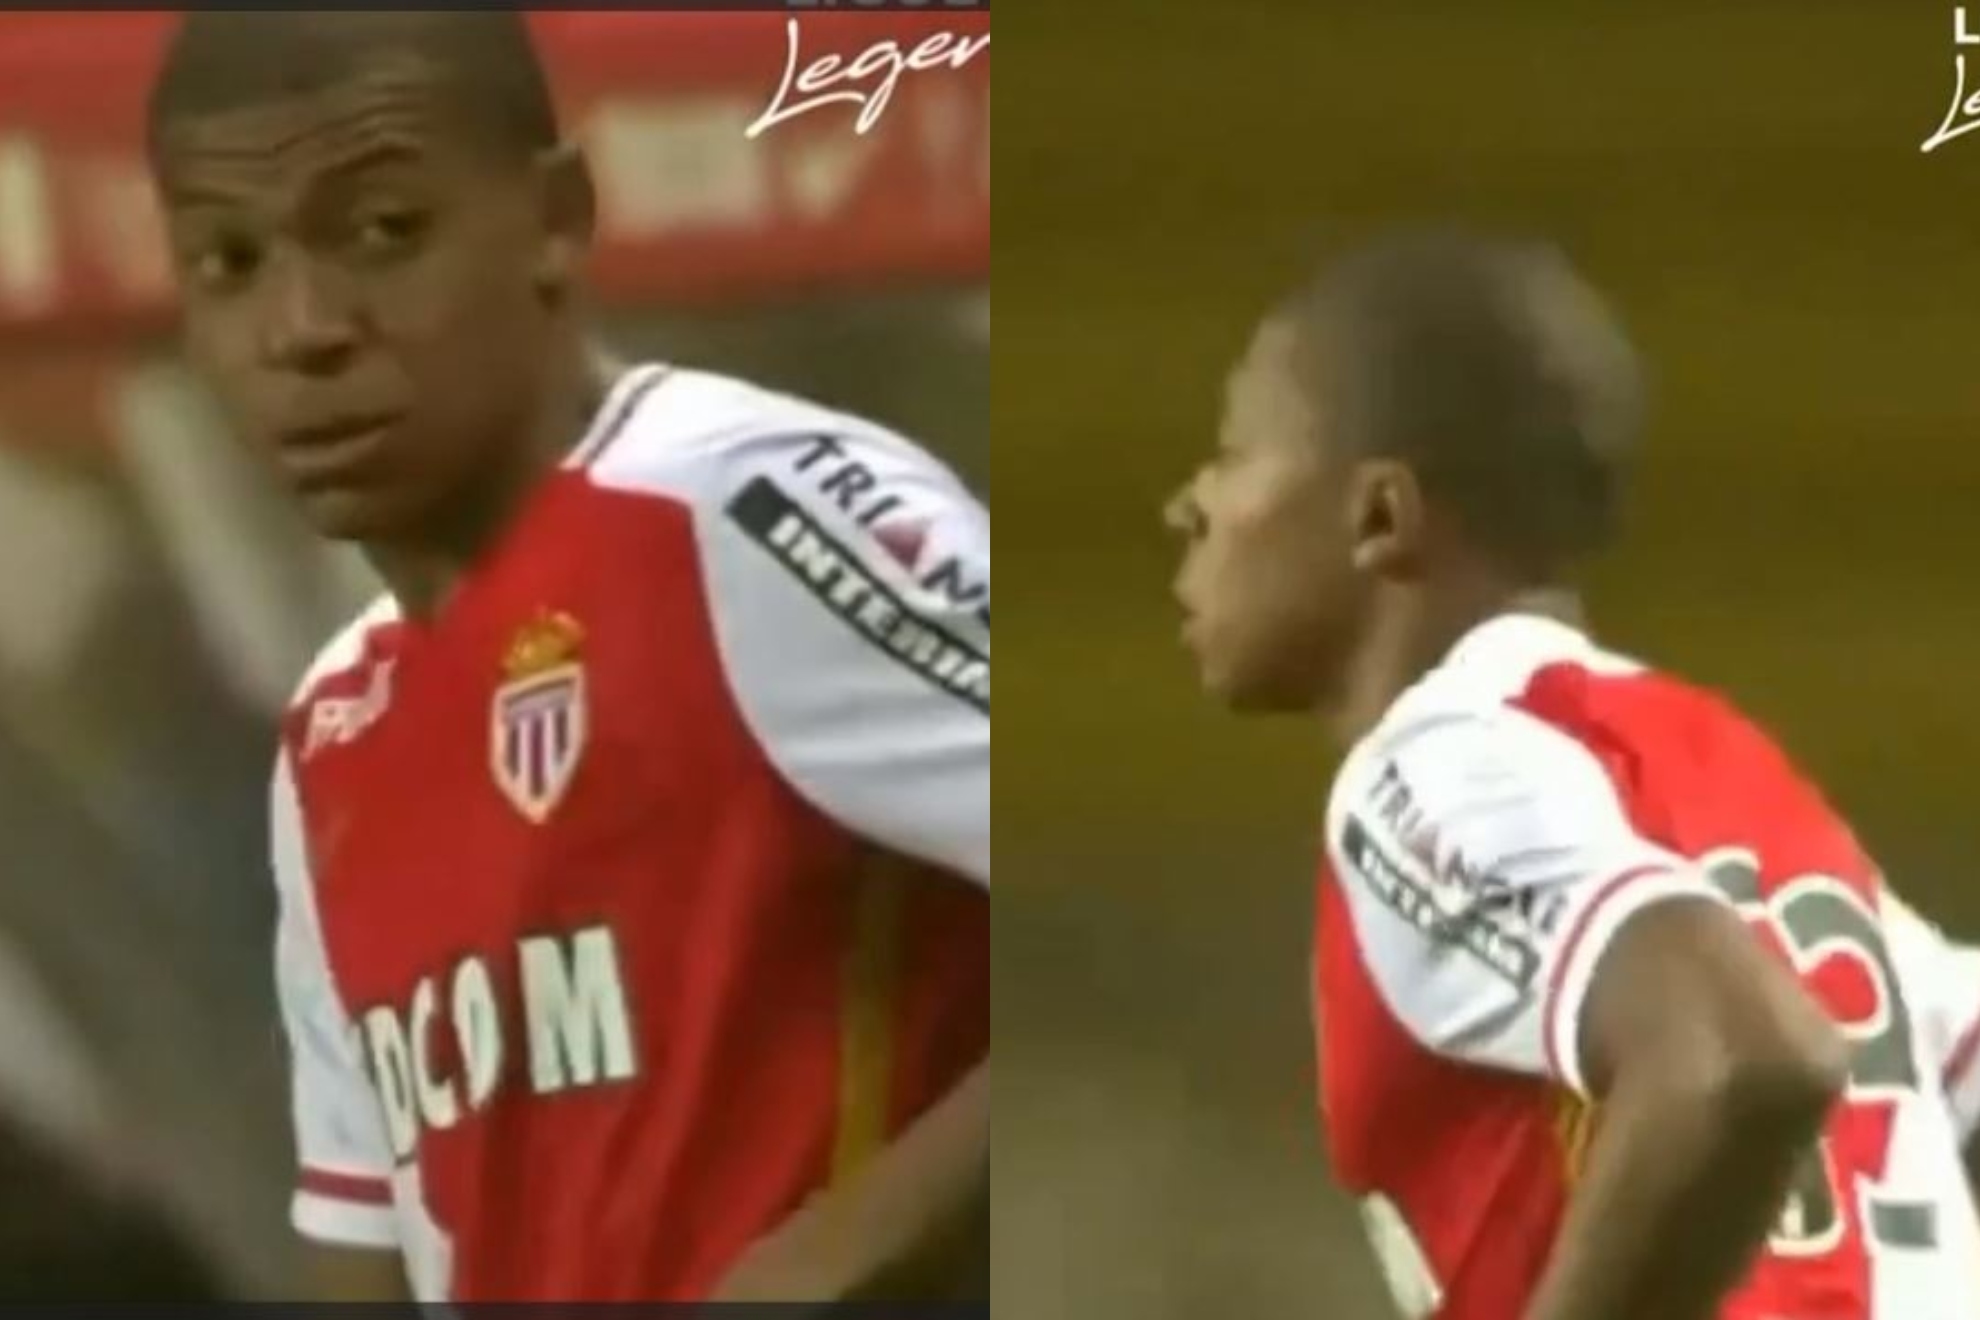 Ocho años del debut profesional de Mbappé: tenía 16 años y sustituyó a un ex del Madrid